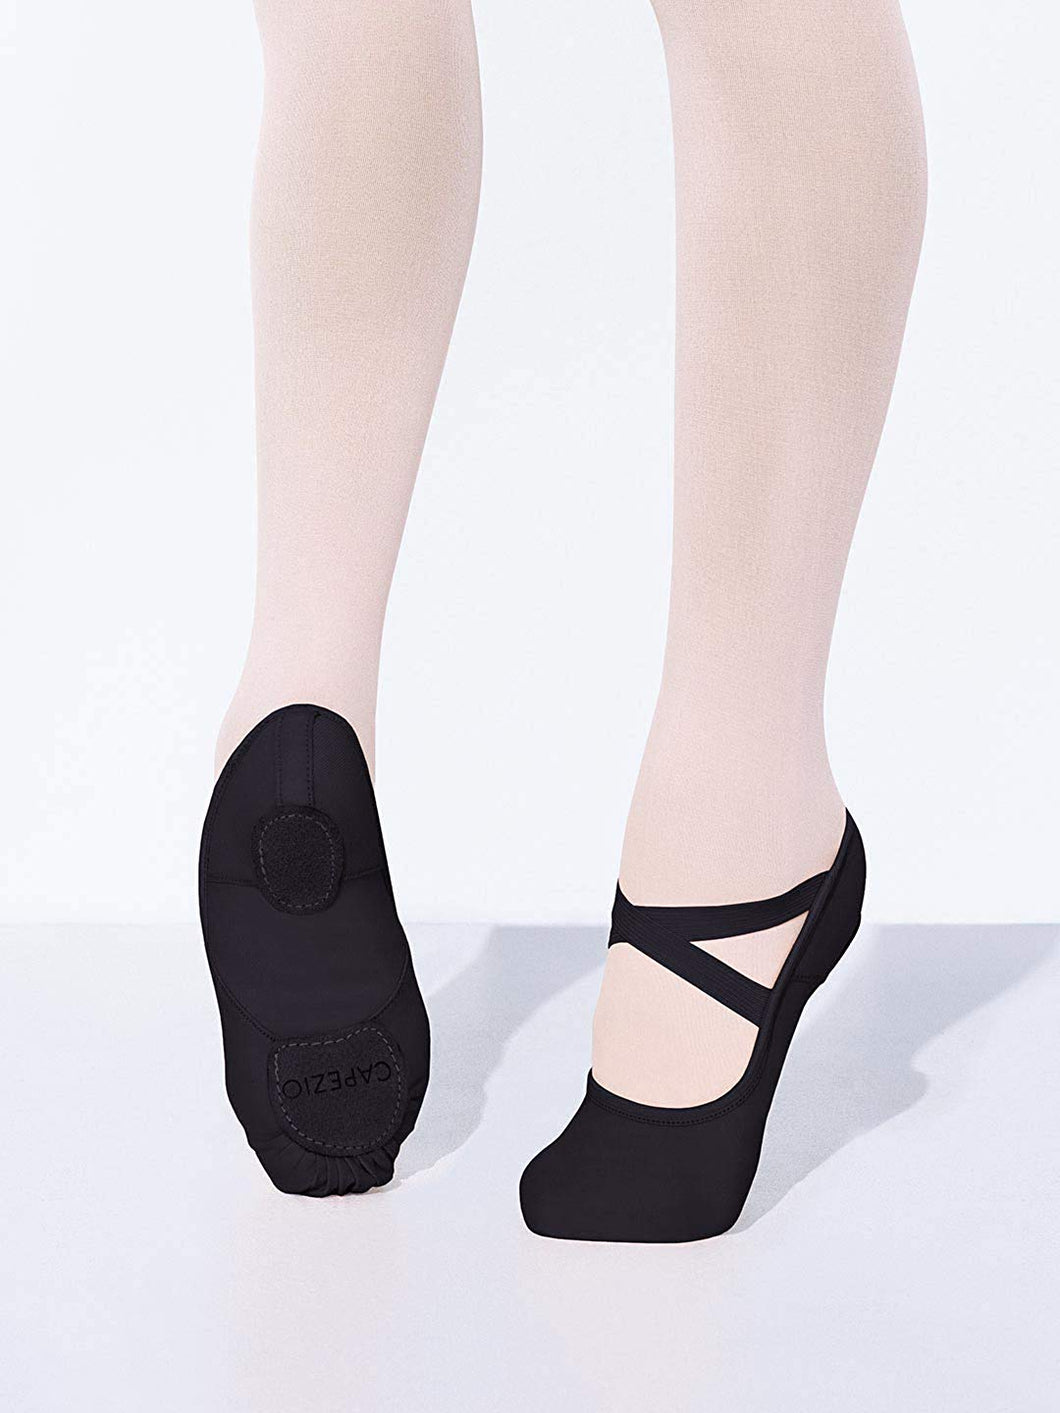 black ballet slippers